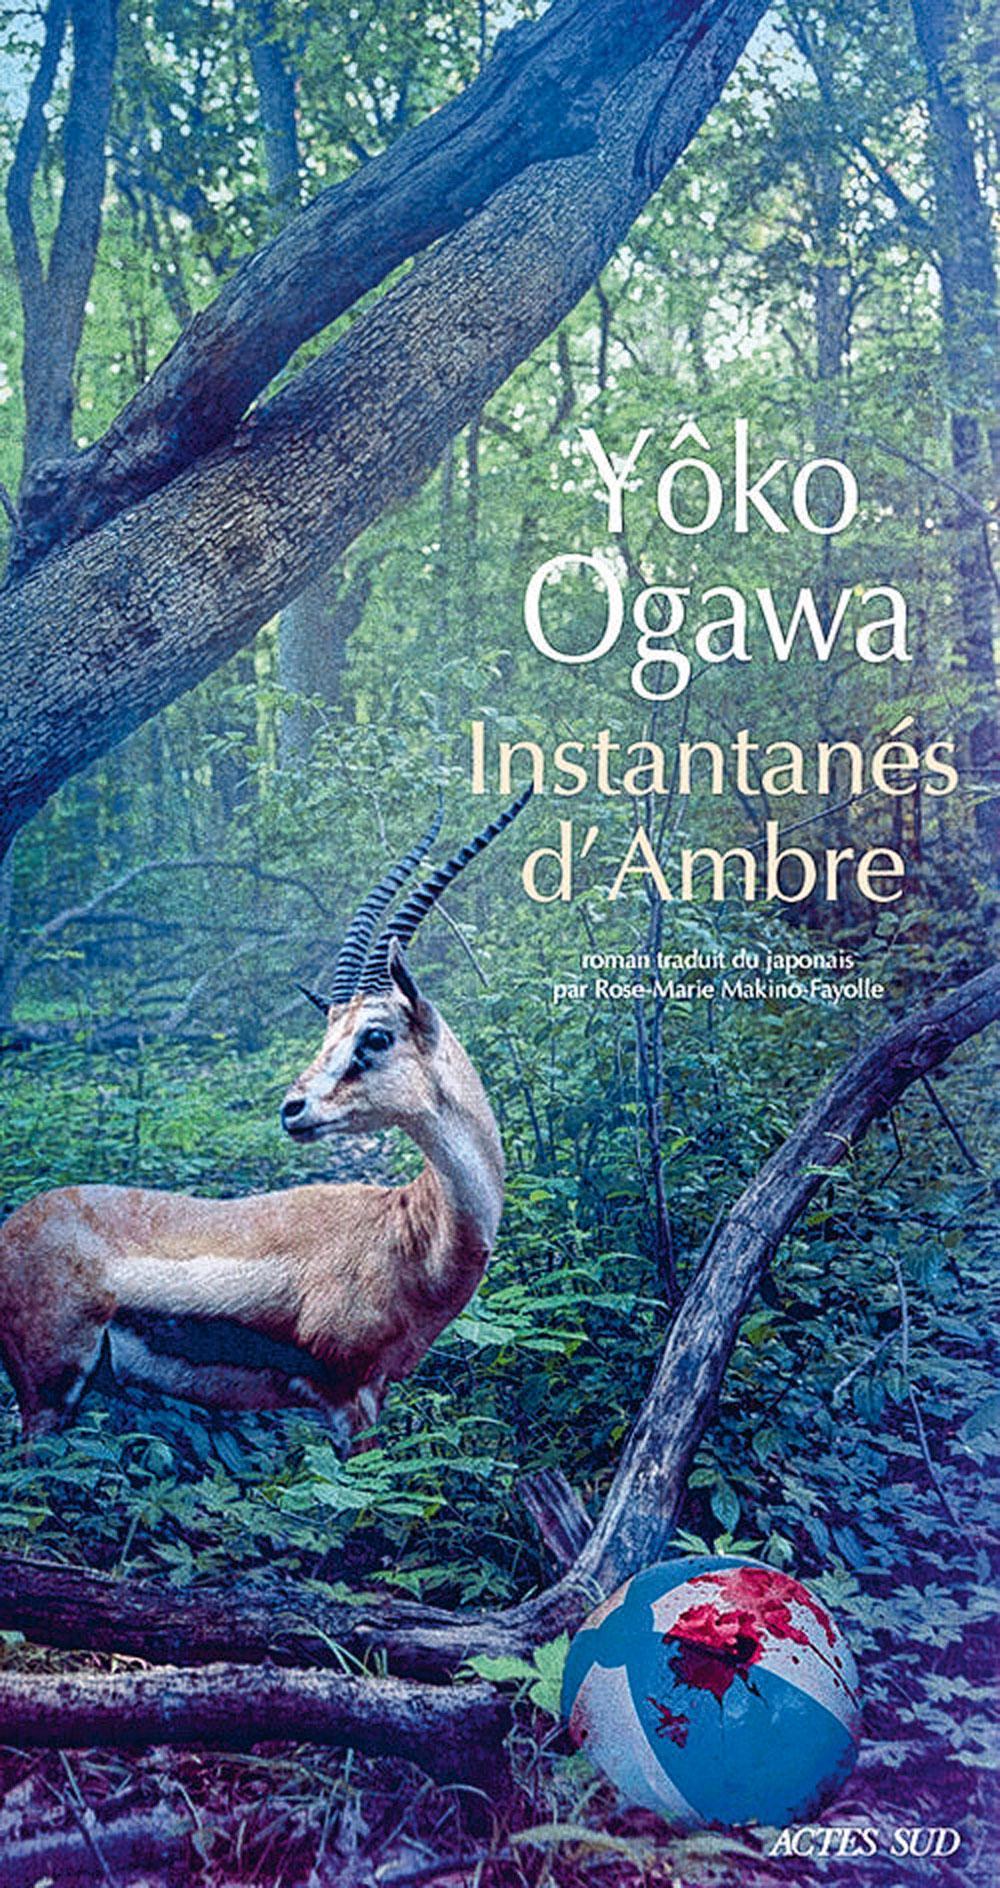 Instantanés d'ambre, par Yoko Ogawa, traduit du japonais par Rose-Marie Makino-Fayolle, Actes Sud, 304 p.